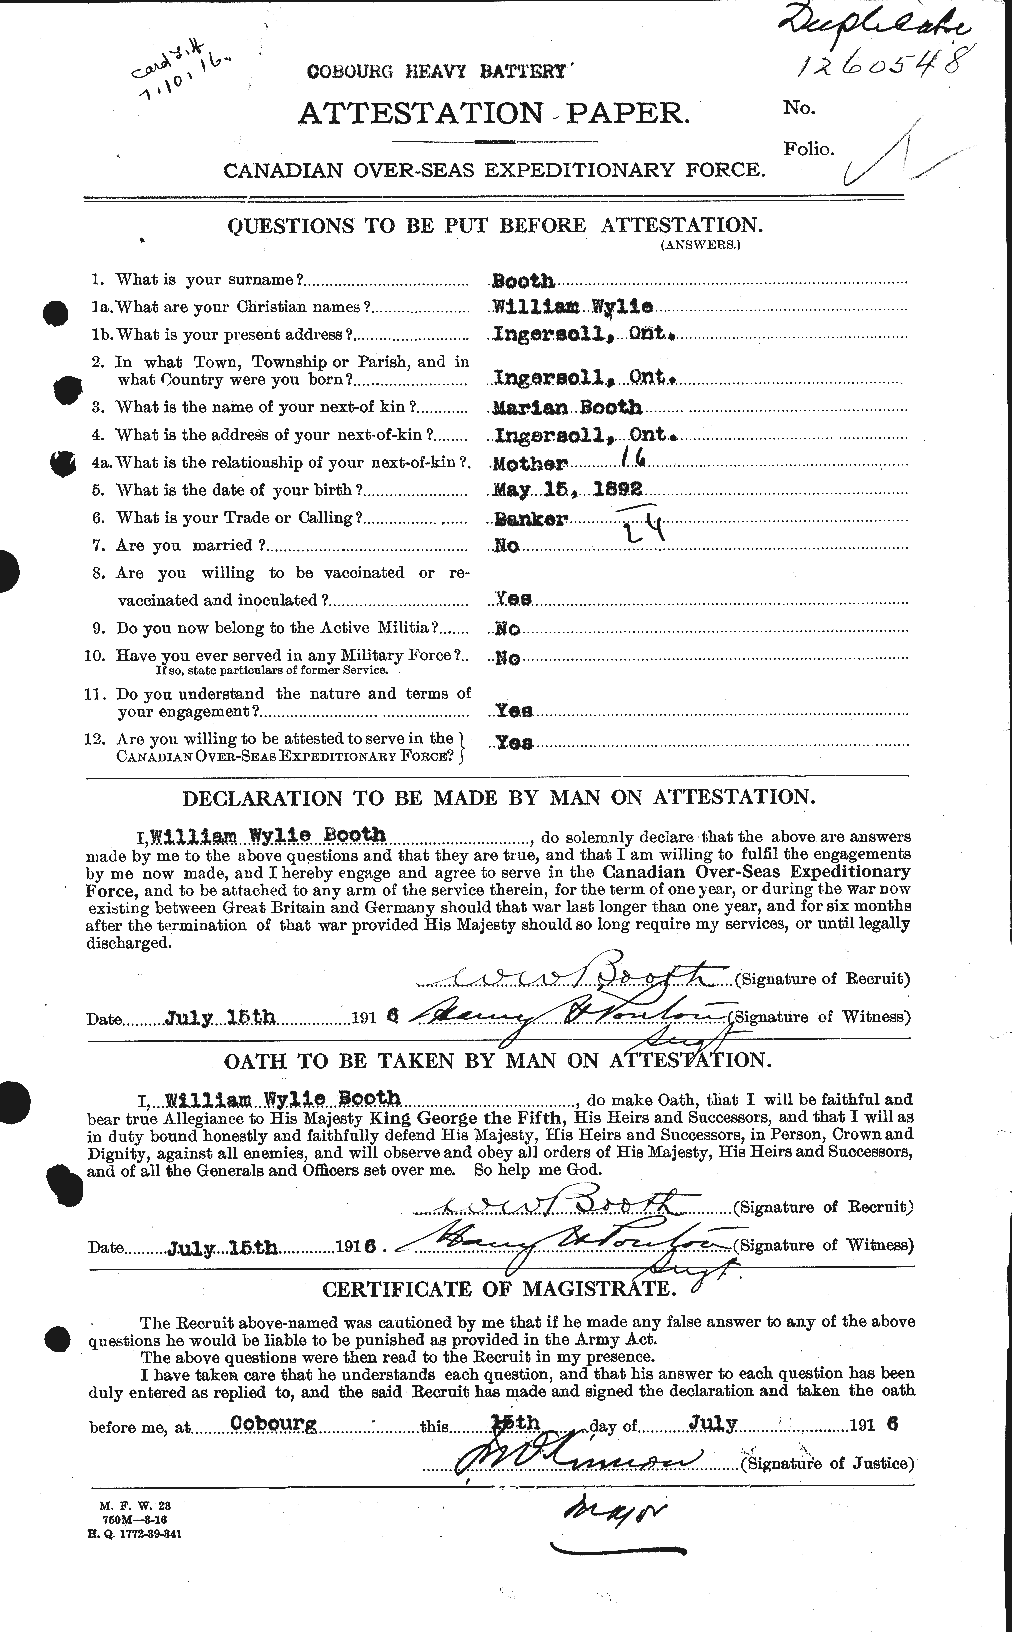 Dossiers du Personnel de la Première Guerre mondiale - CEC 251037a